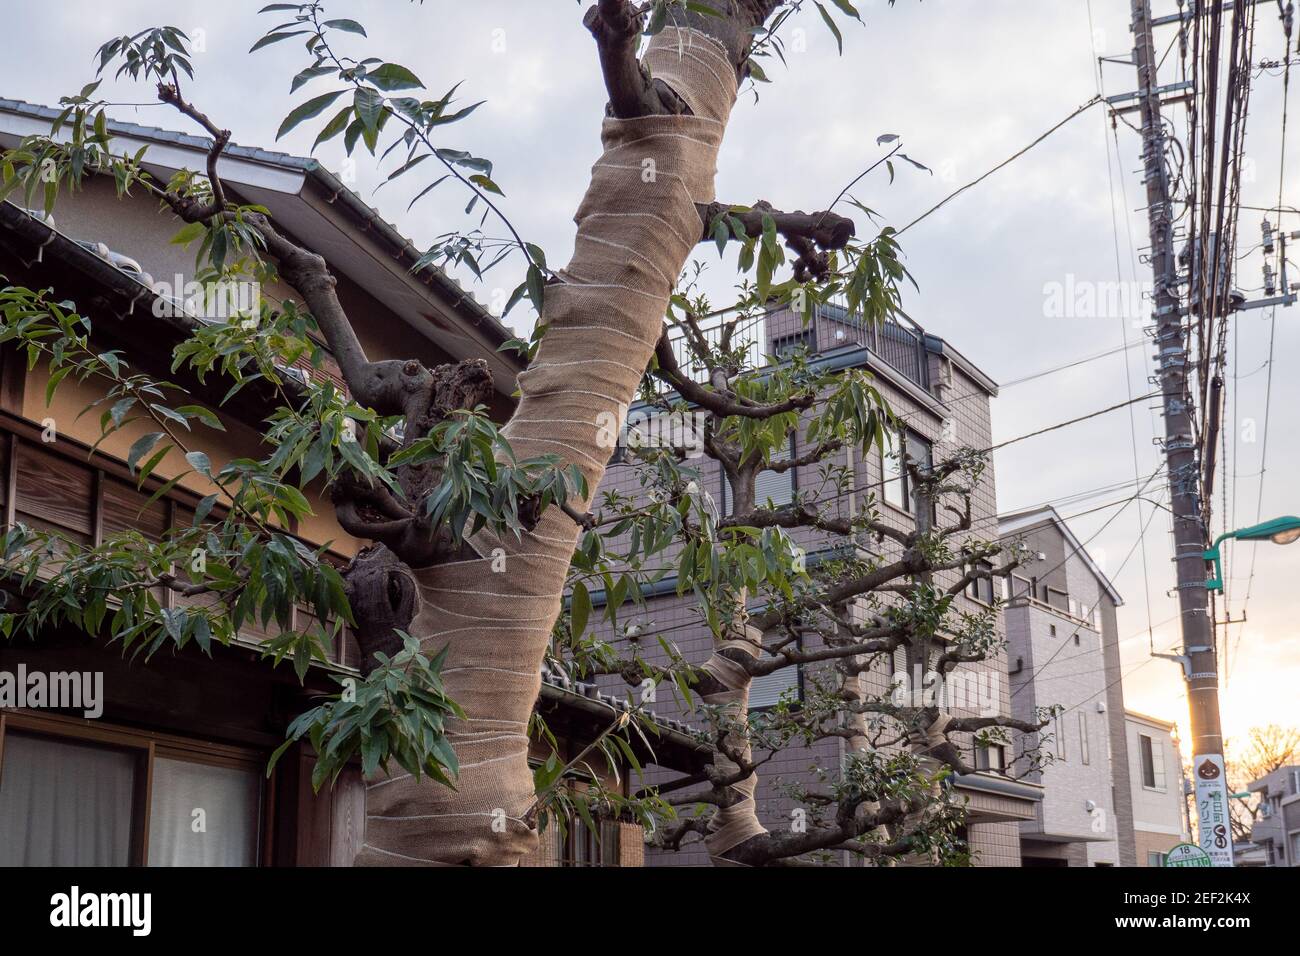 Isolation protection des arbres enveloppant des bandages sur un arbre dans la ville urbaine de Nerima, Tokyo, Japon. Banque D'Images